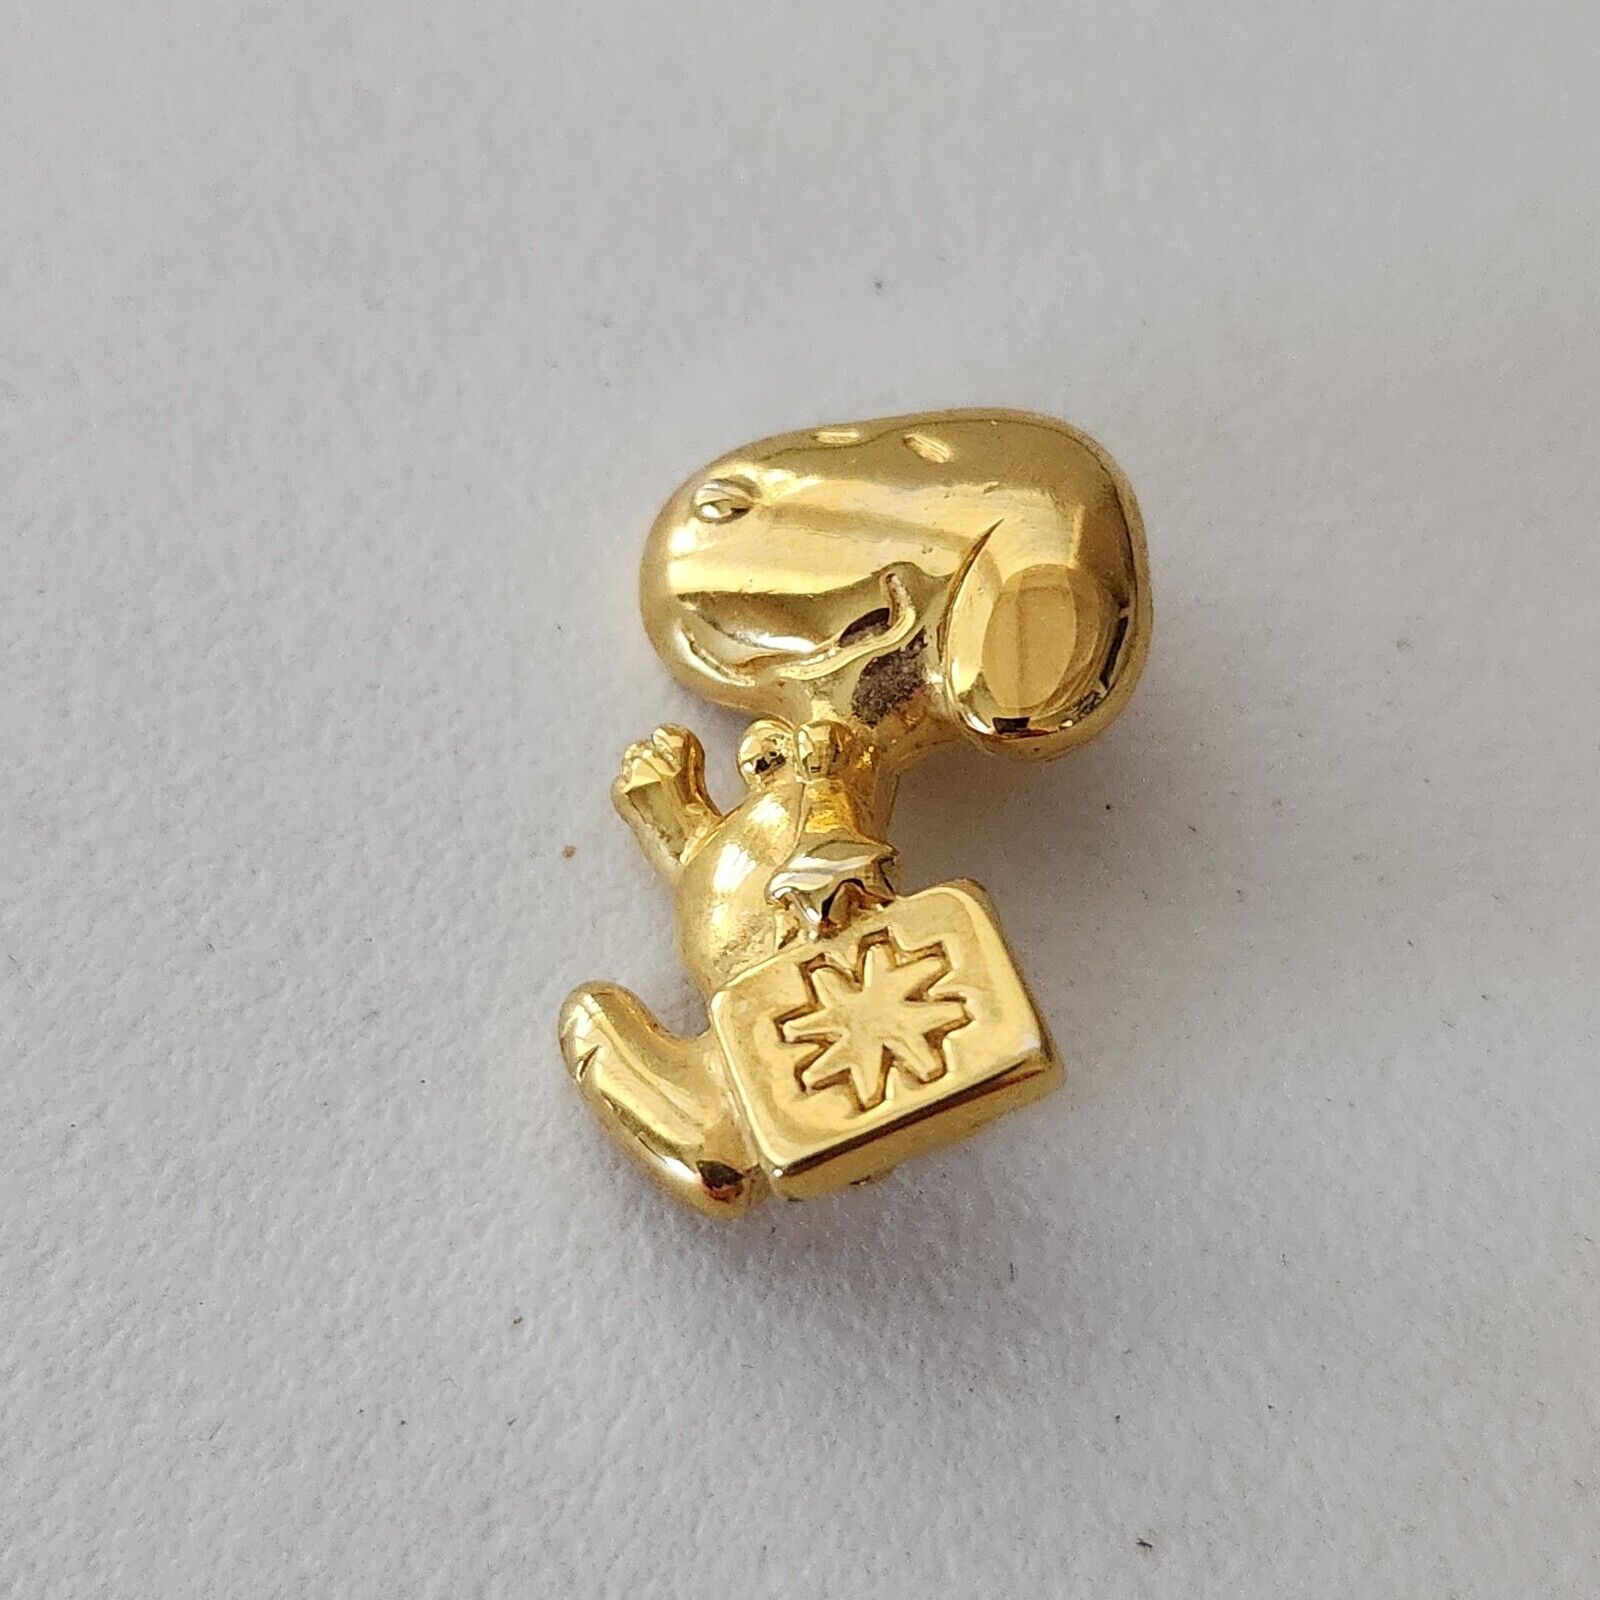 Vintage 1958 U.F.S Peanuts Snoopy Gold Tone Brooch Pin